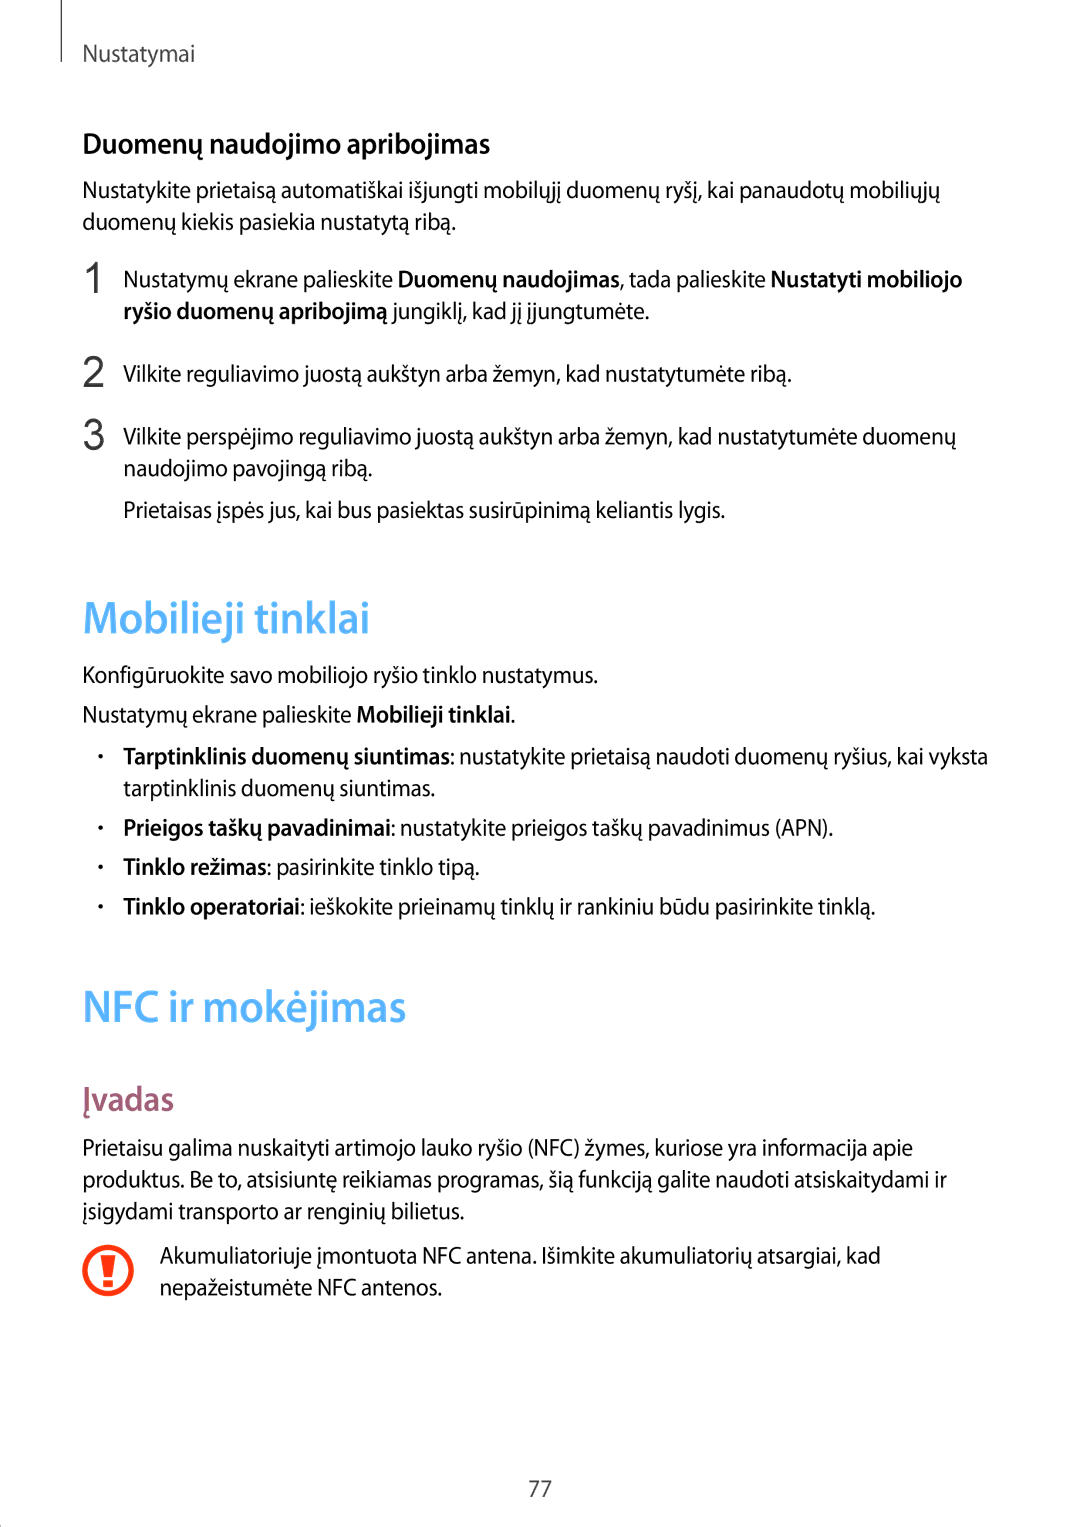 Samsung SM-G389FDSASEB manual Mobilieji tinklai, NFC ir mokėjimas, Duomenų naudojimo apribojimas 